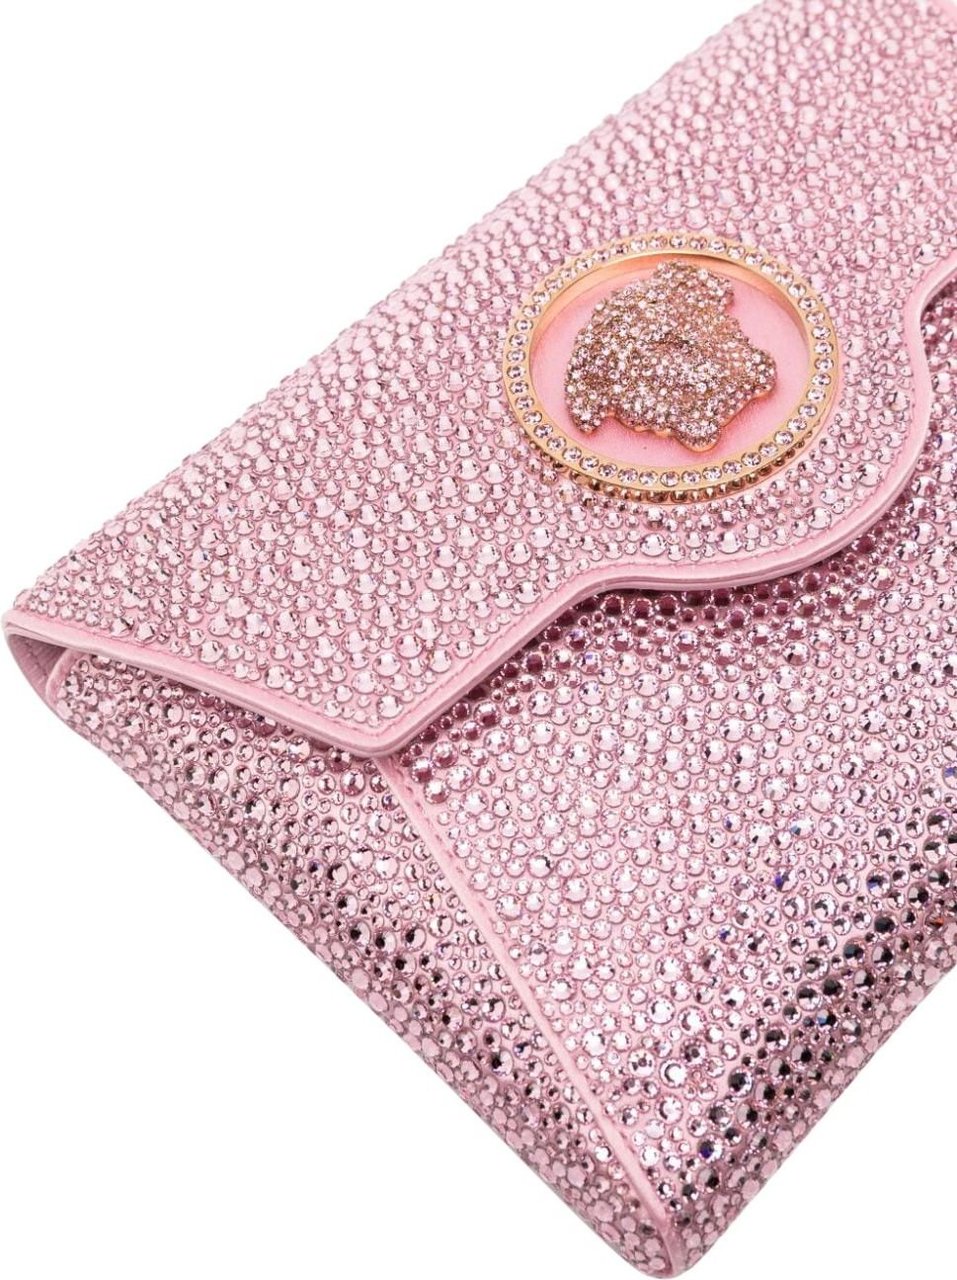 Versace Bags Pink Roze